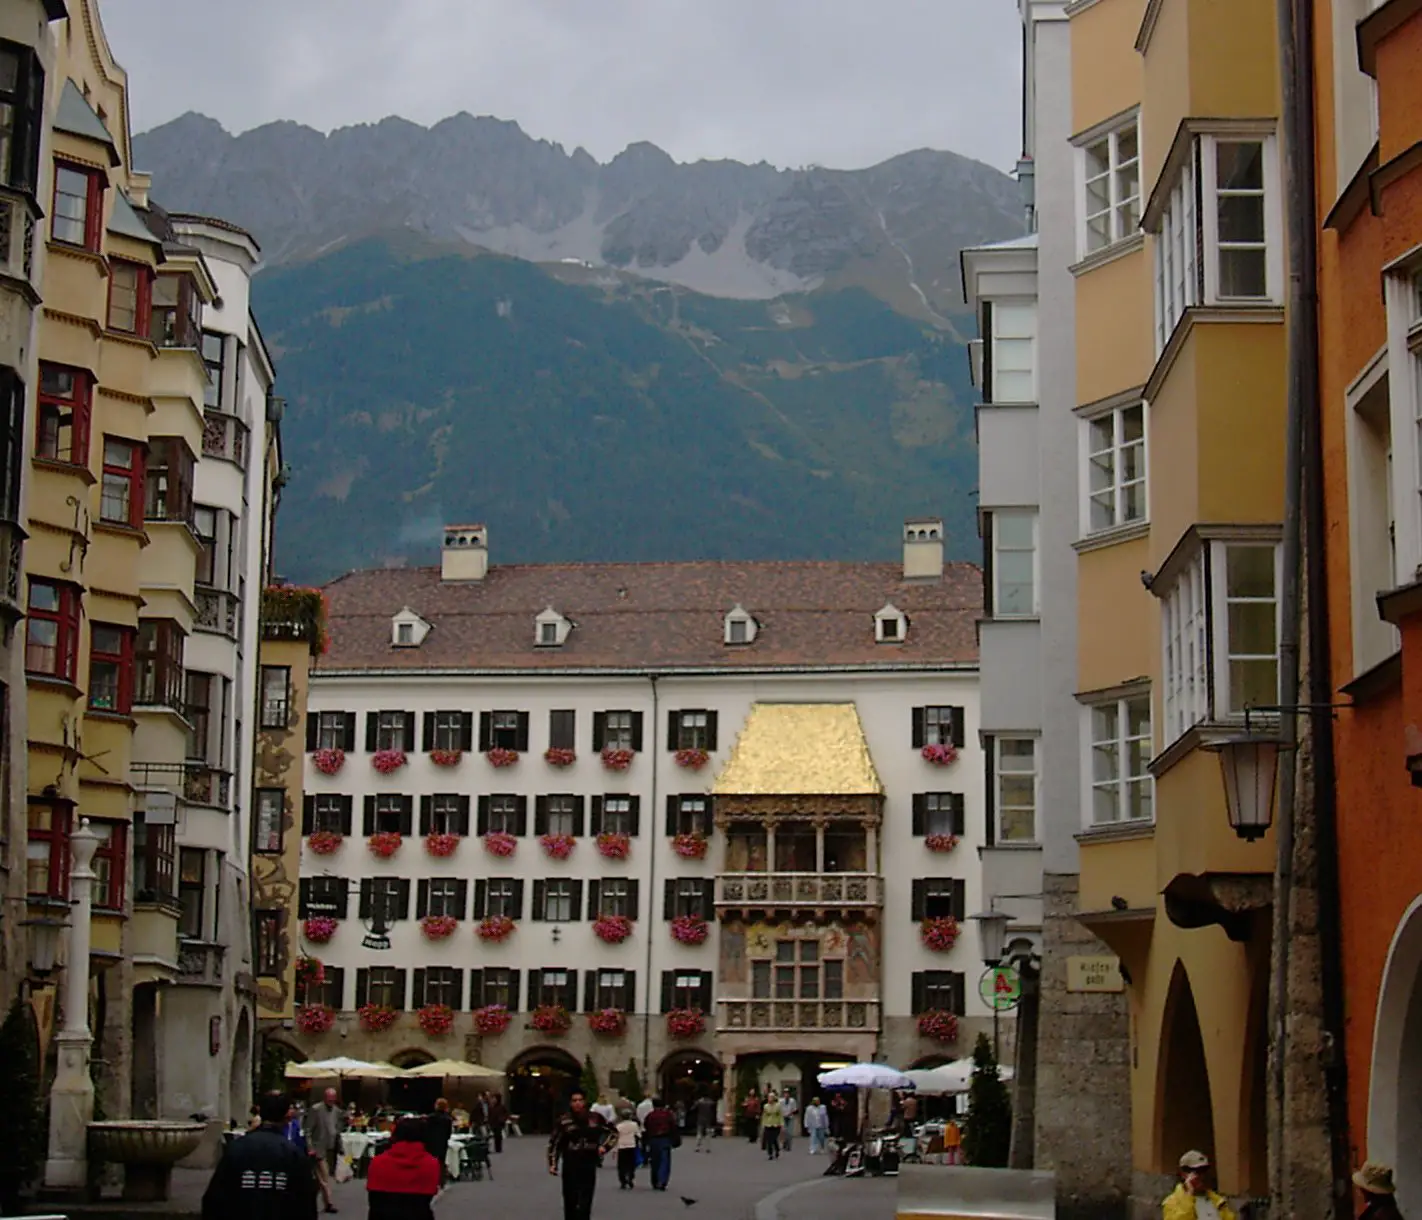 Casa cu acoperis aurit, Innsbruck, Austria. Sursa foto: wikipedia.org